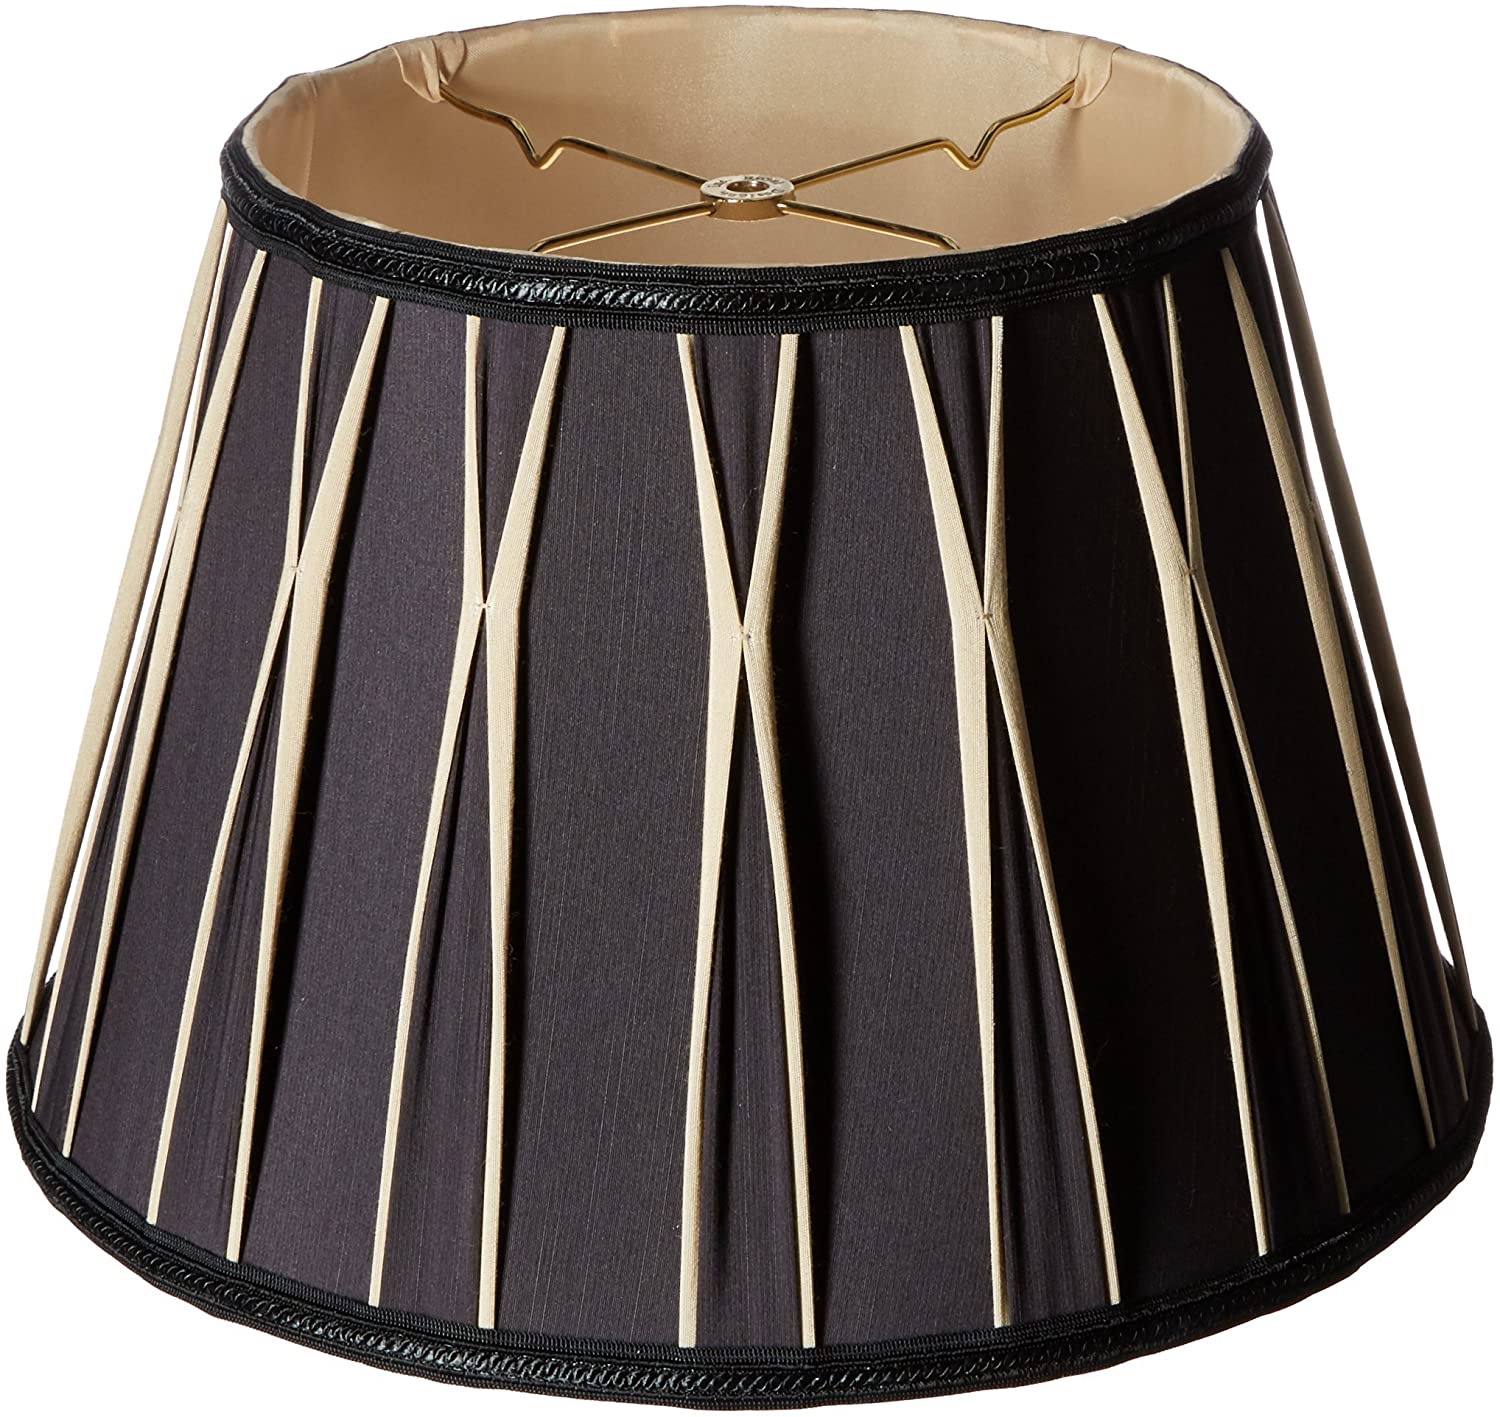 Bowtie-Pleated-Drum-Designer-Lamp-Shade 10 Unique & Wonderful Lampshade Ideas